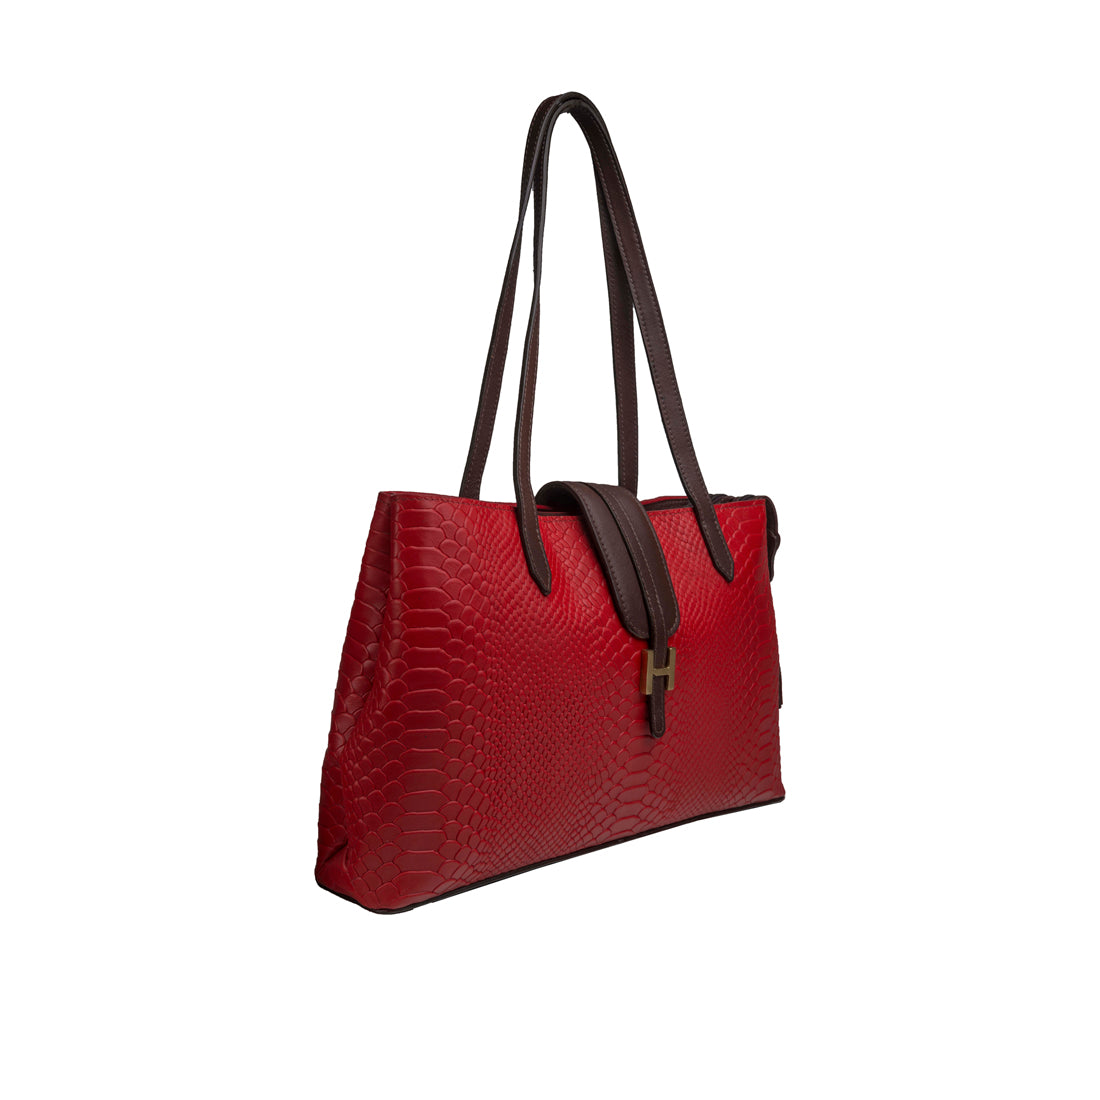 Buy Red Phoenix 02 Tote Bag Online - Hidesign